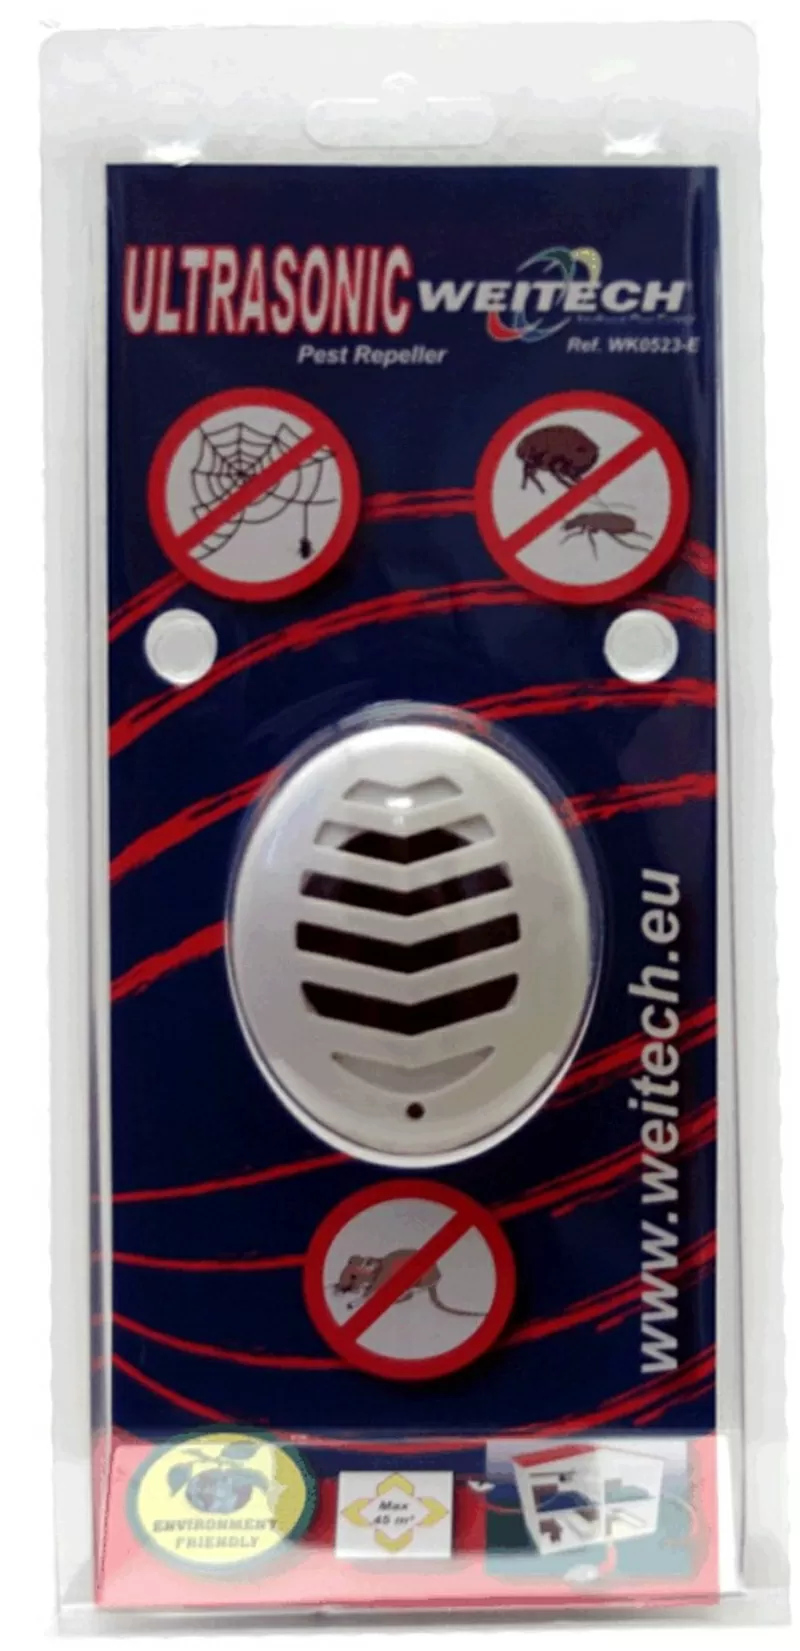 Против грызунов отпугиватель WK-0523,  эффективный прибор на ультразвук